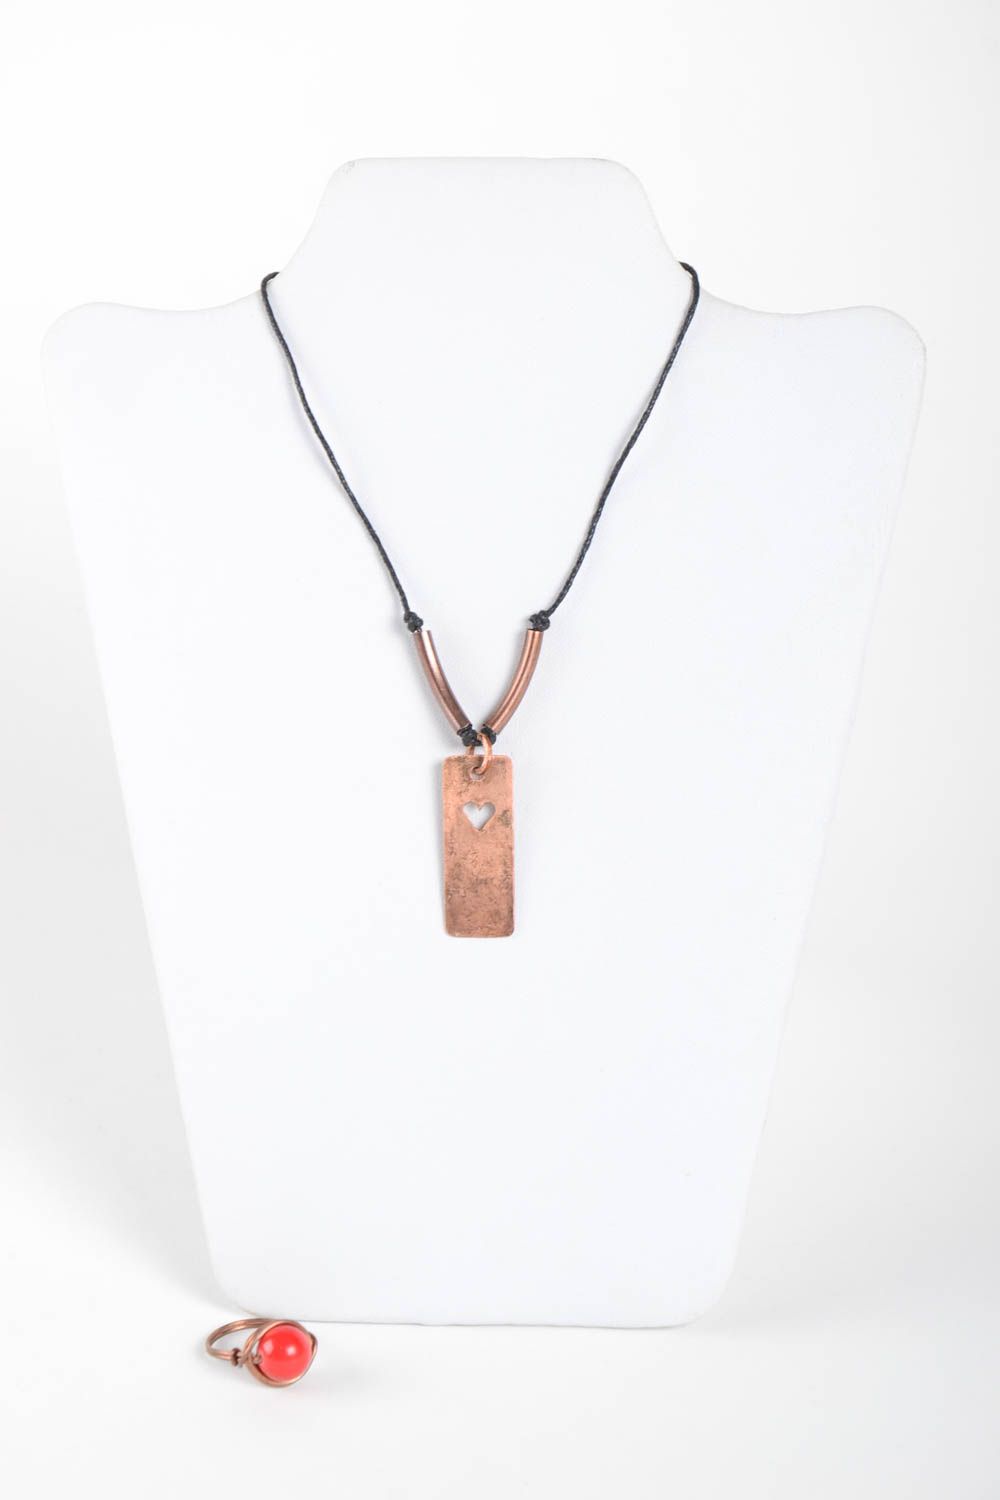 Handmade copper jewelry copper wire pendant copper ring copper jewelry photo 2